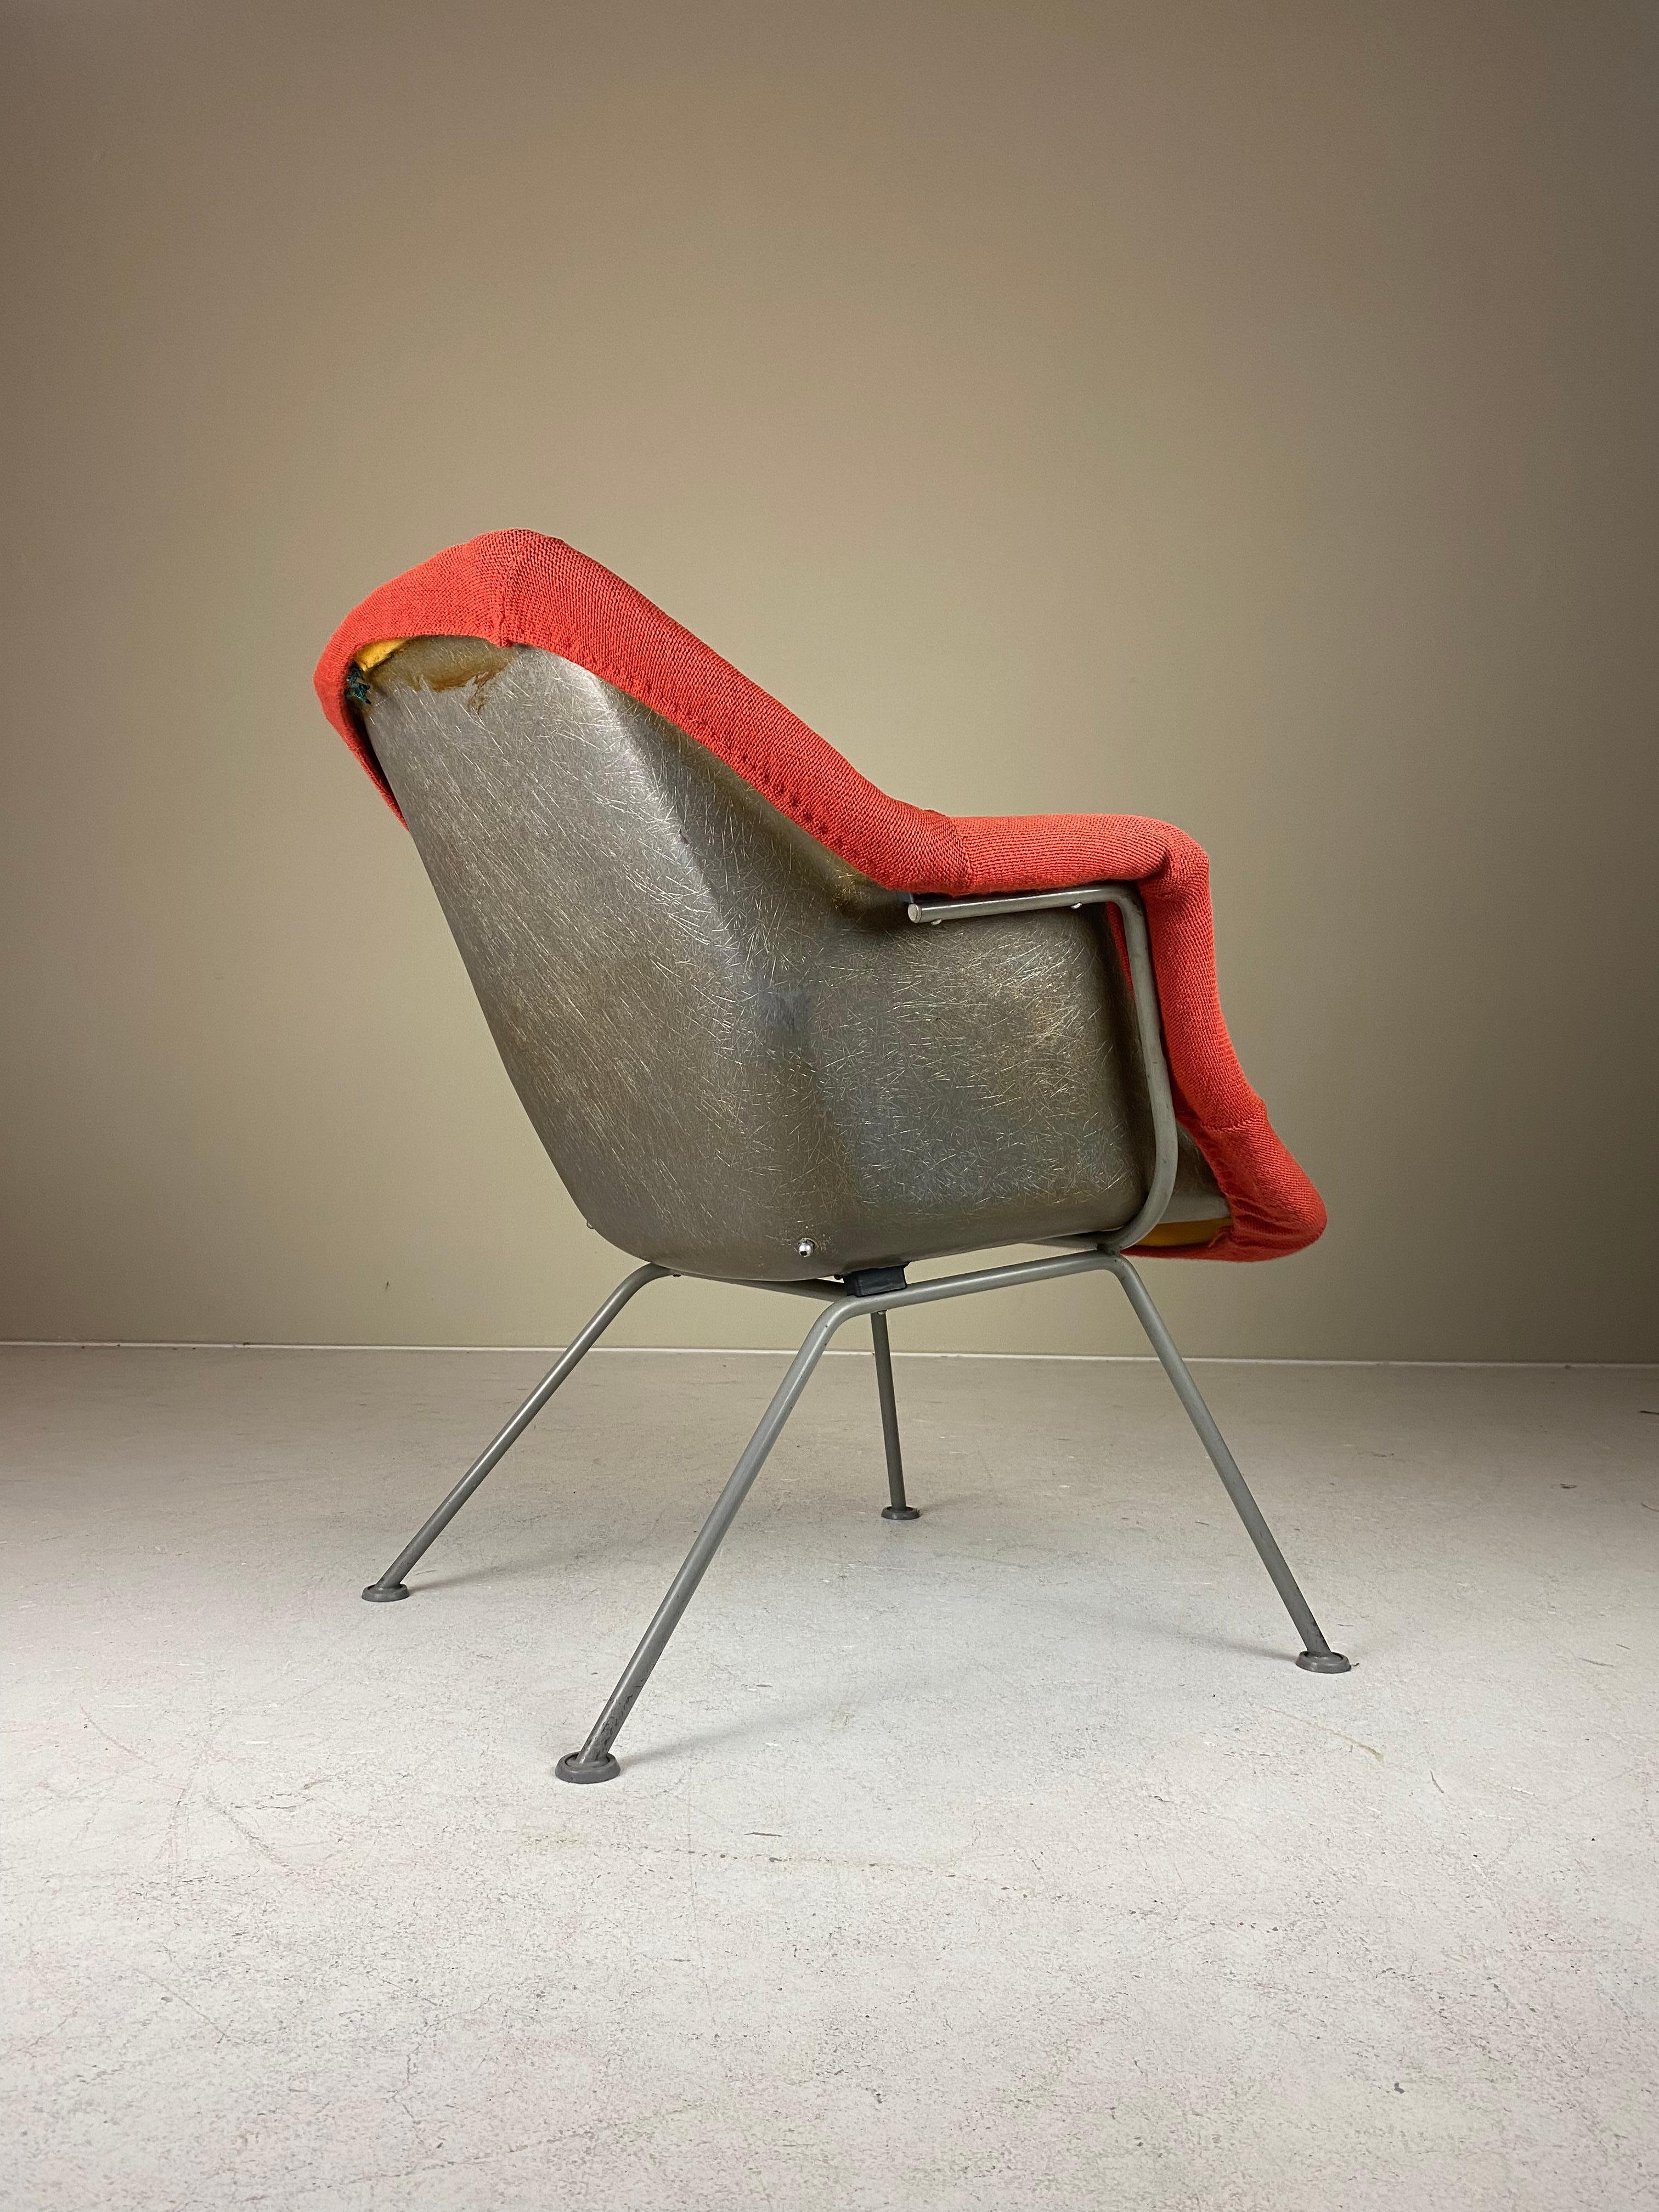 Gelistet ist ein einzigartiges Set von zwei Sesseln des Modells Nr. 416 Sessel, entworfen von Wim Rietveld (Sohn von Gerrit Rietveld) und Andre Cordemeyer im Jahr 1957. Es war der erste holländische Polyester-Sessel, der aus einem Stück geformten